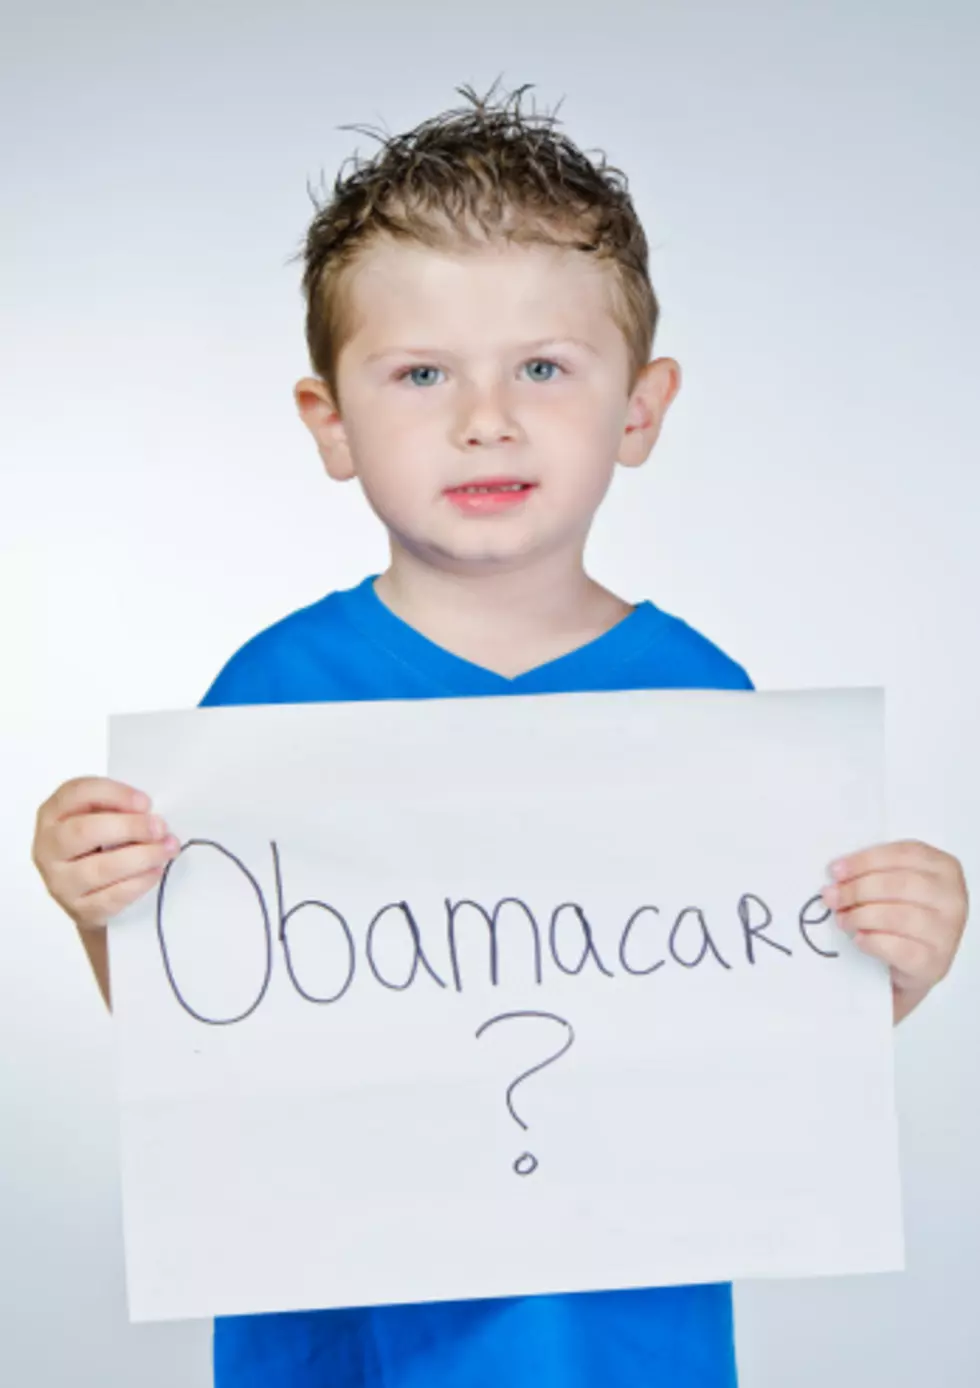 Open Enrollment for Obamacare